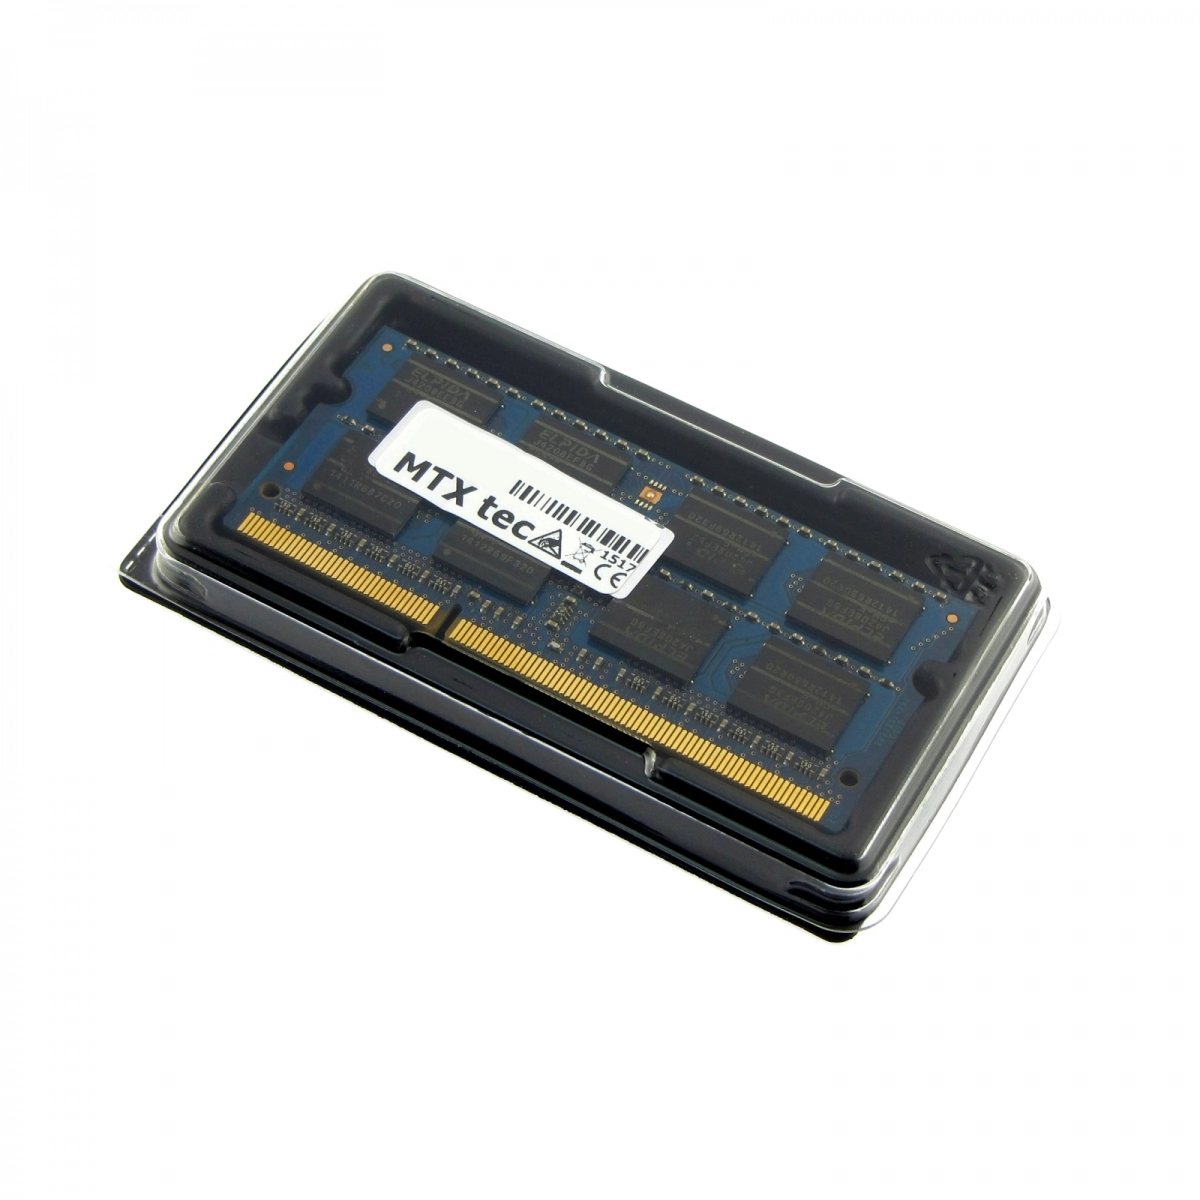 MTXtec Arbeitsspeicher 8 GB RAM für MEDION Akoya E6240T MD98762